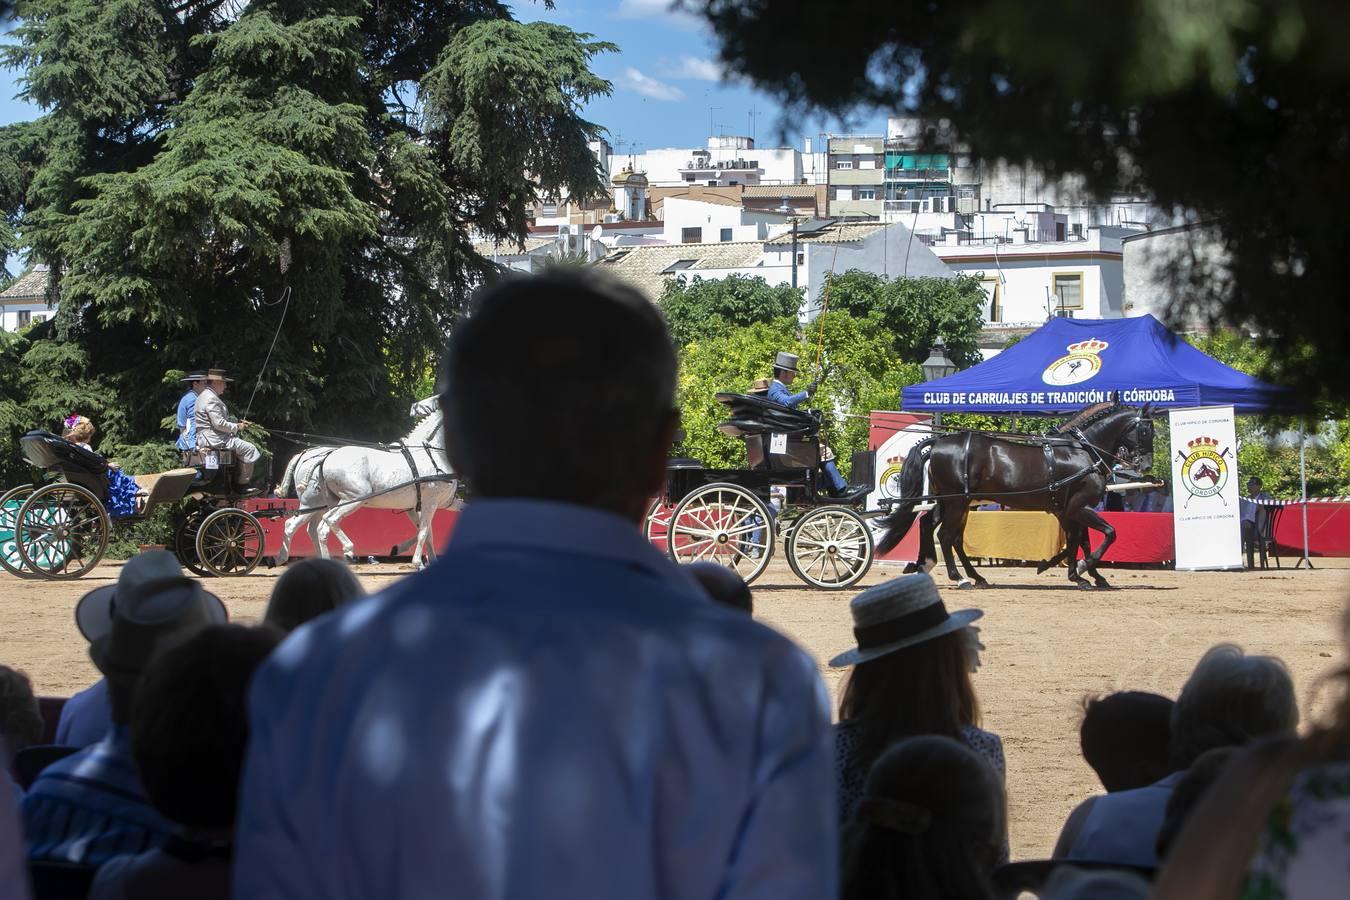 La VII Exhibición de Carruajes de Tradición de Córdoba, en imágenes